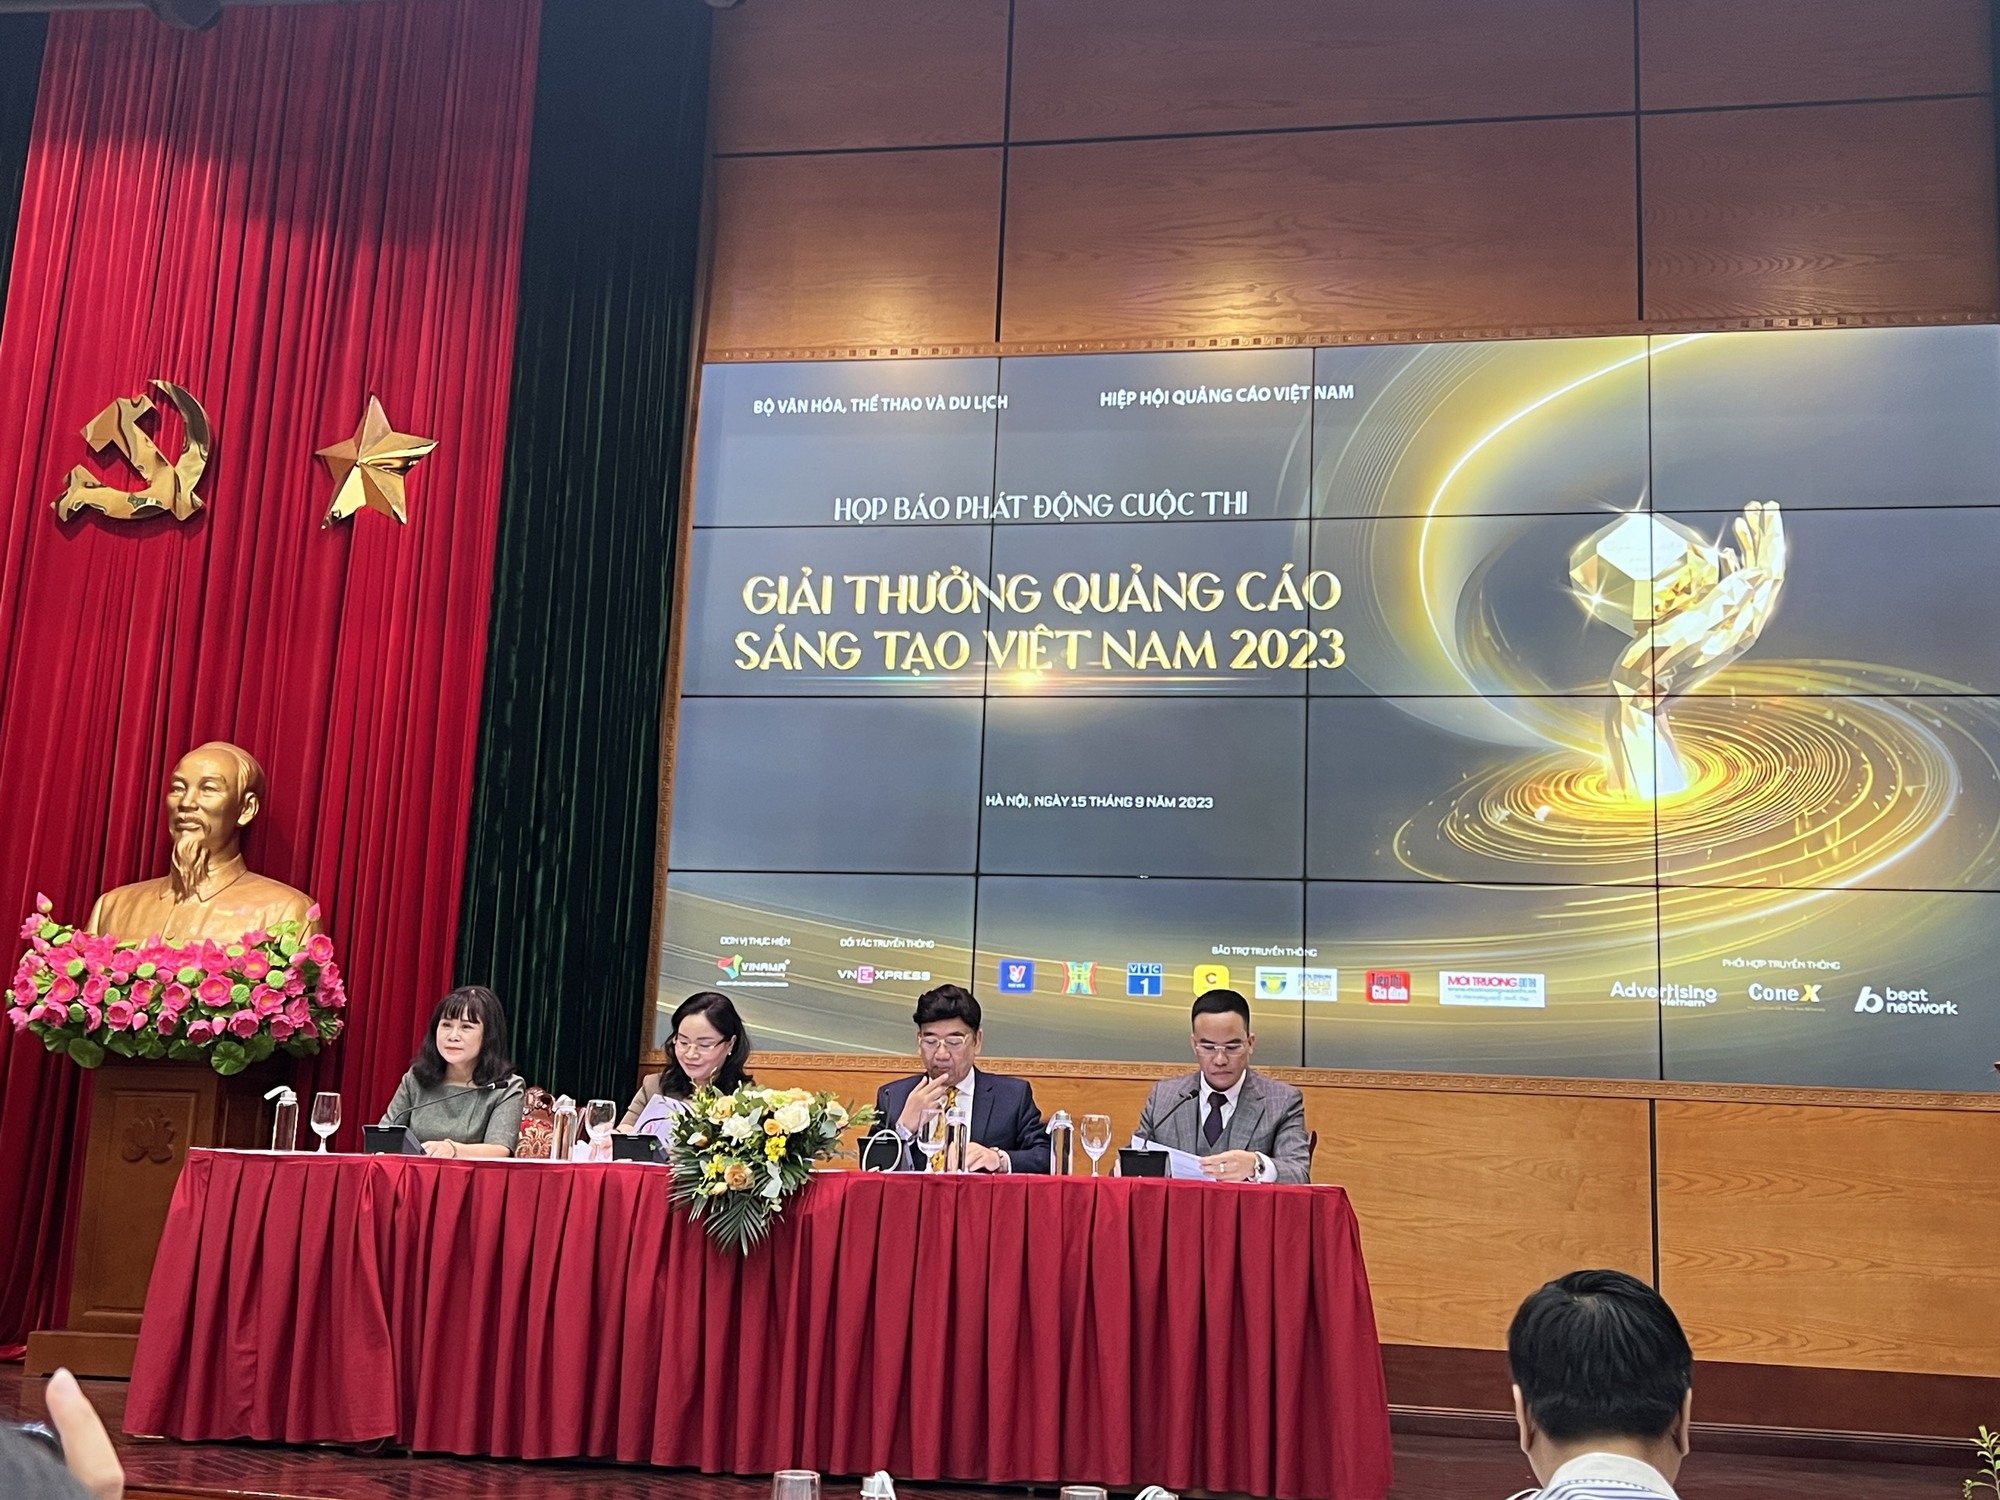 Phát động cuộc thi Giải thưởng quảng cáo sáng tạo Việt Nam năm 2023 - Ảnh 1.